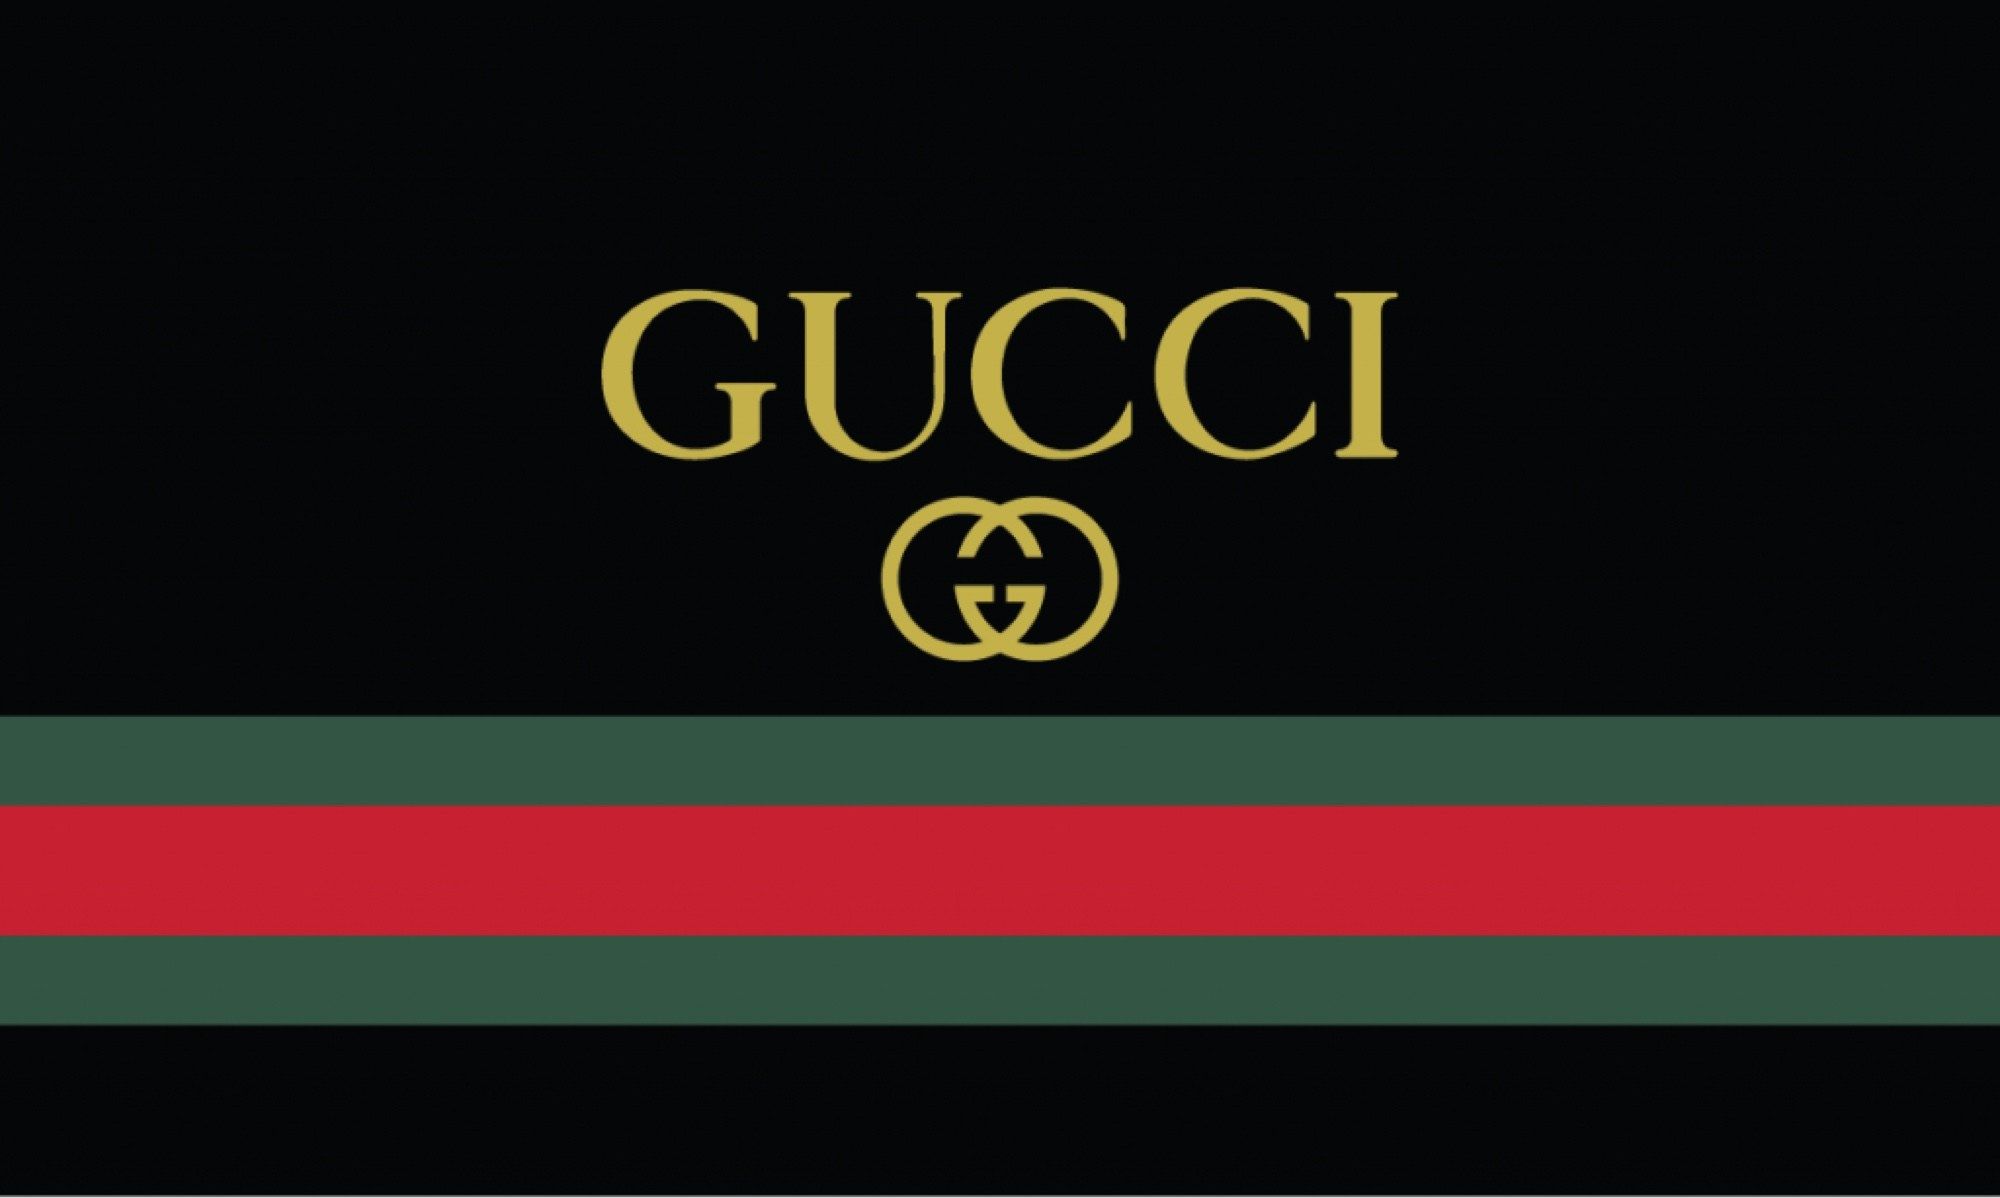 Ảnh Gucci nền đen đơn giản tinh tế